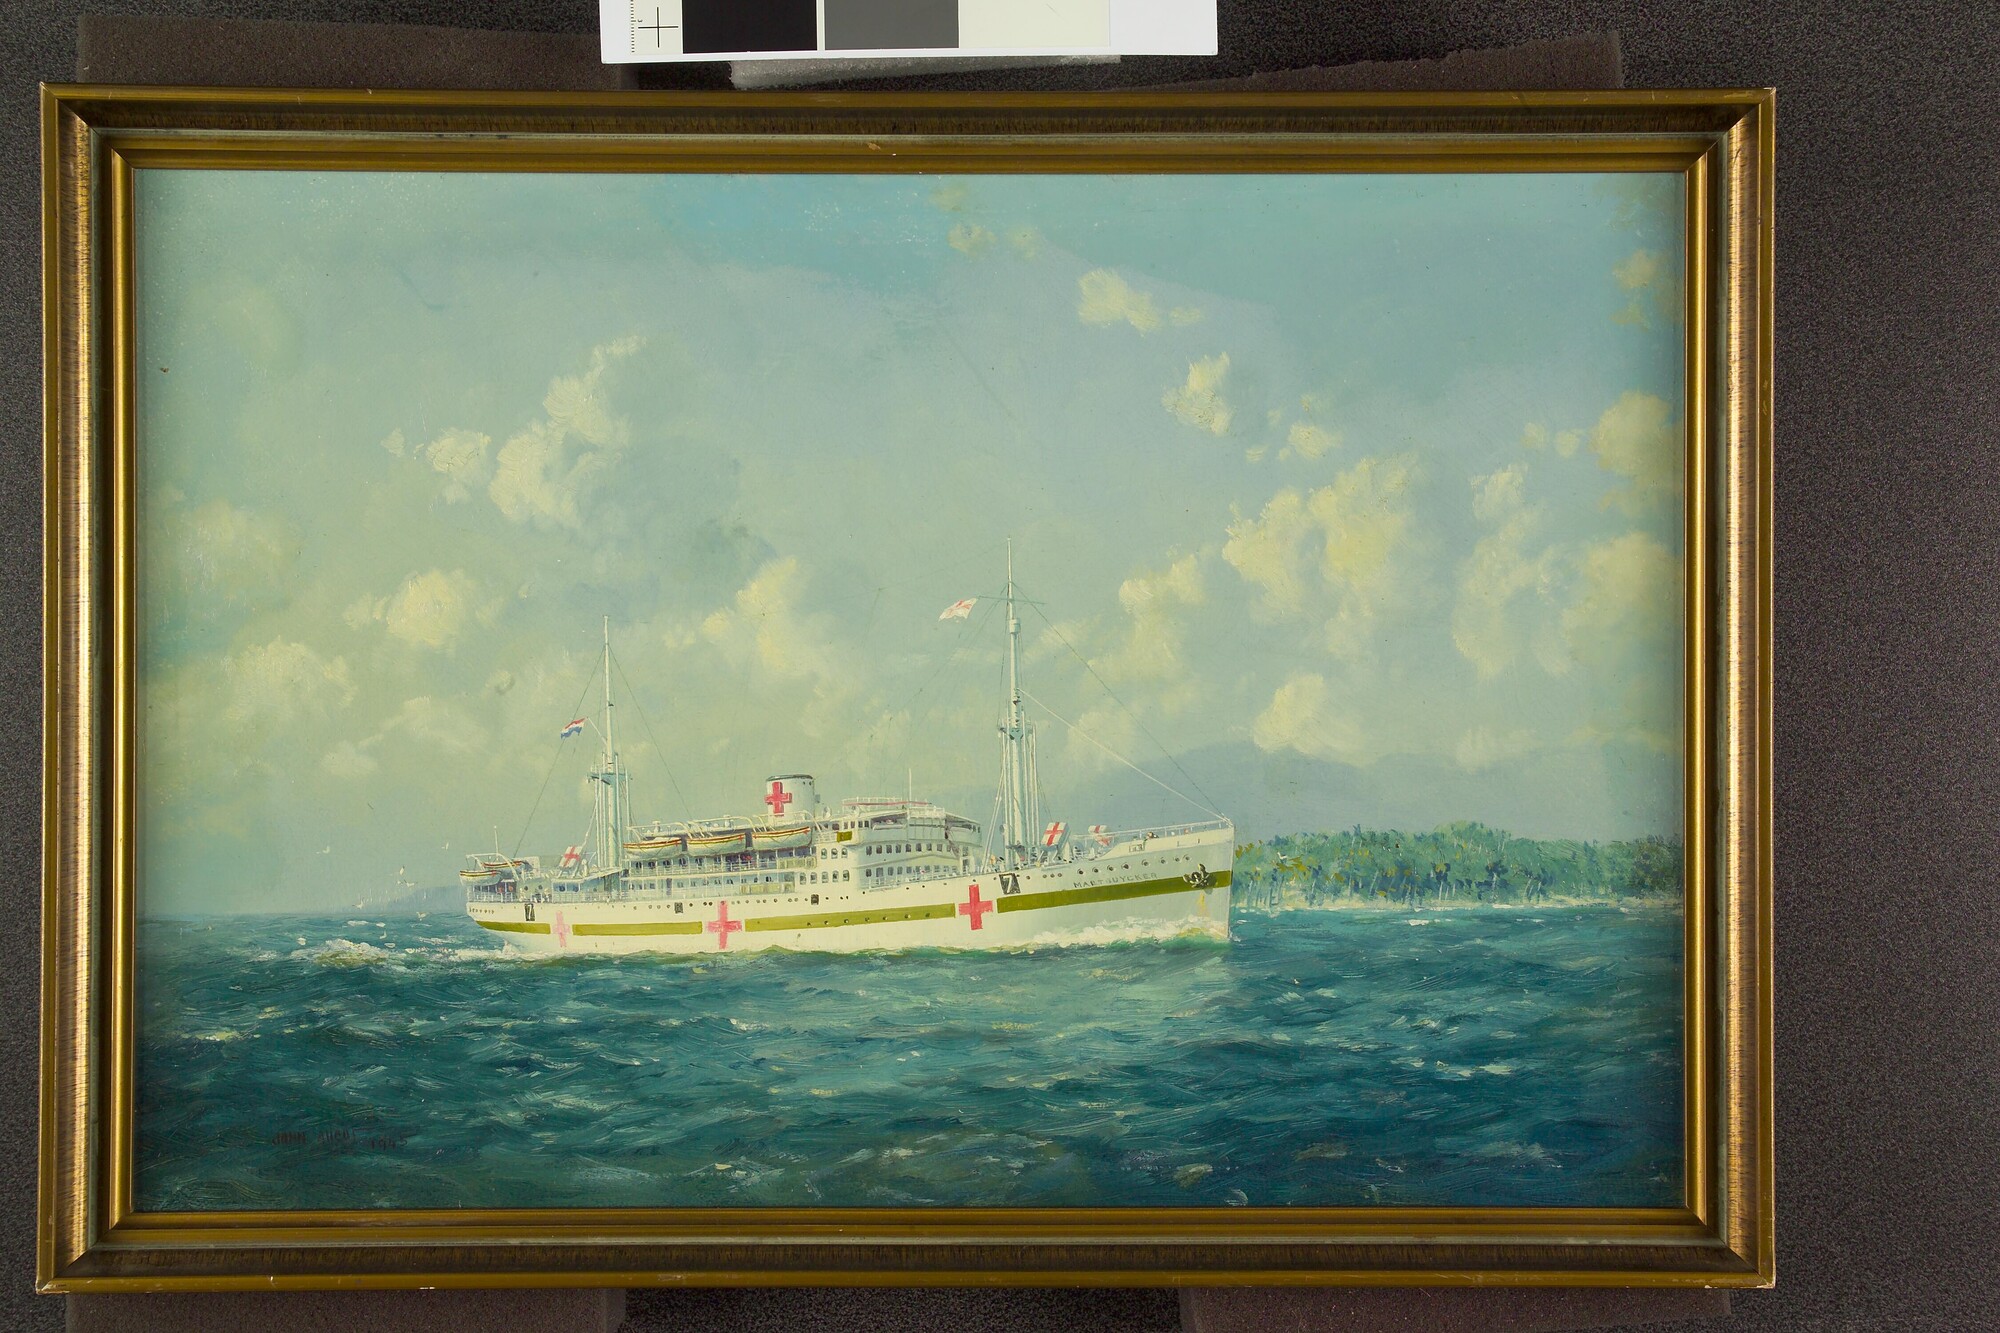 2005.2073; Het ms. Maetsuycker van de Koninklijke Paketvaart-Maatschappij als hospitaalschip; schilderij